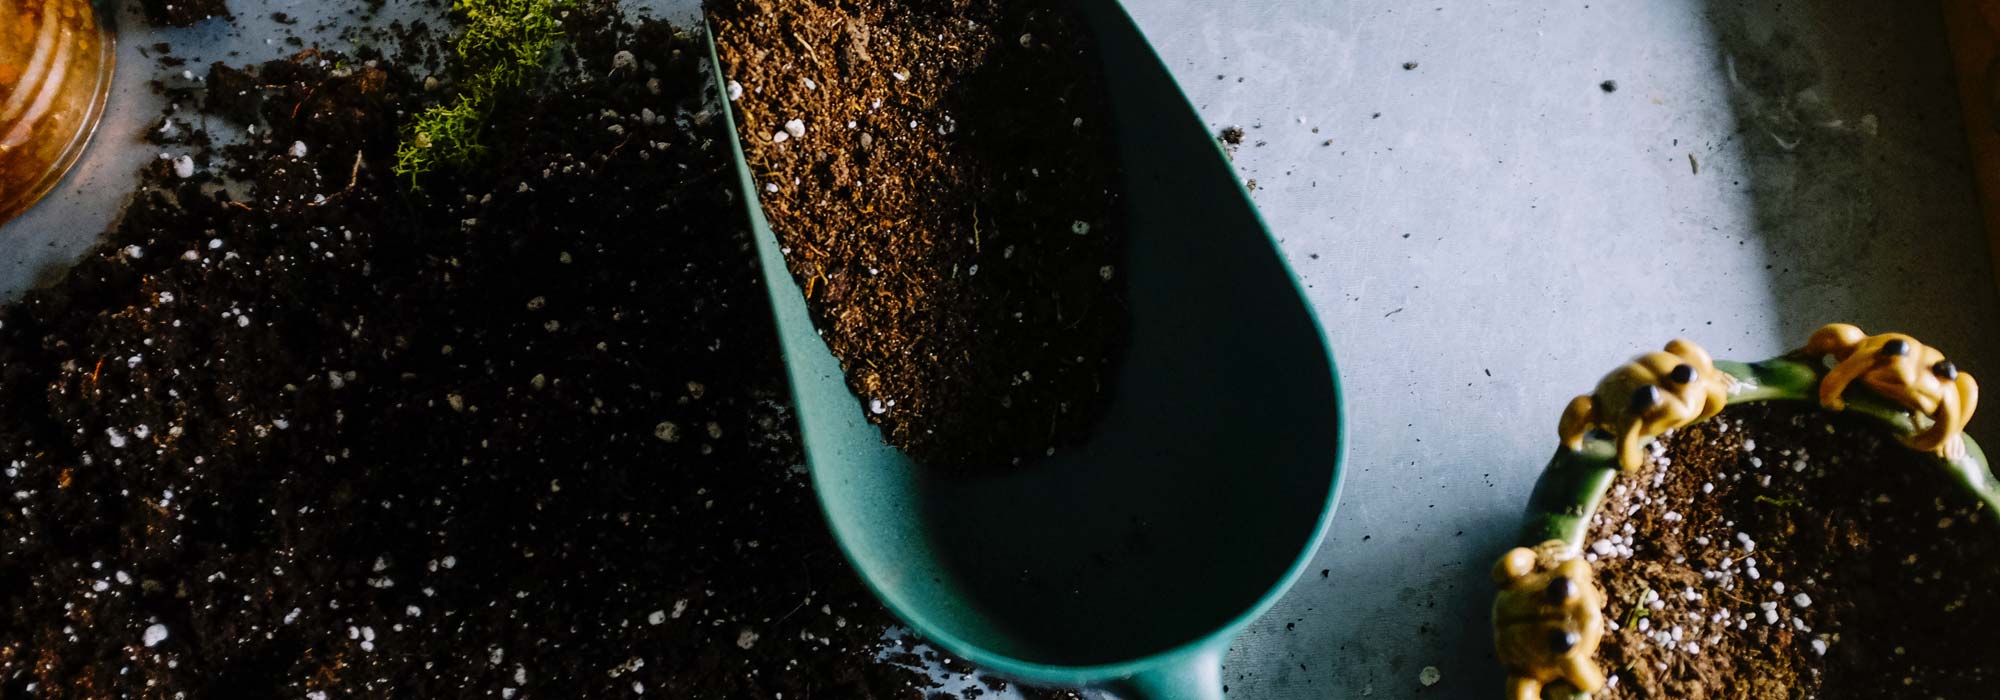 Fertilizer in soil